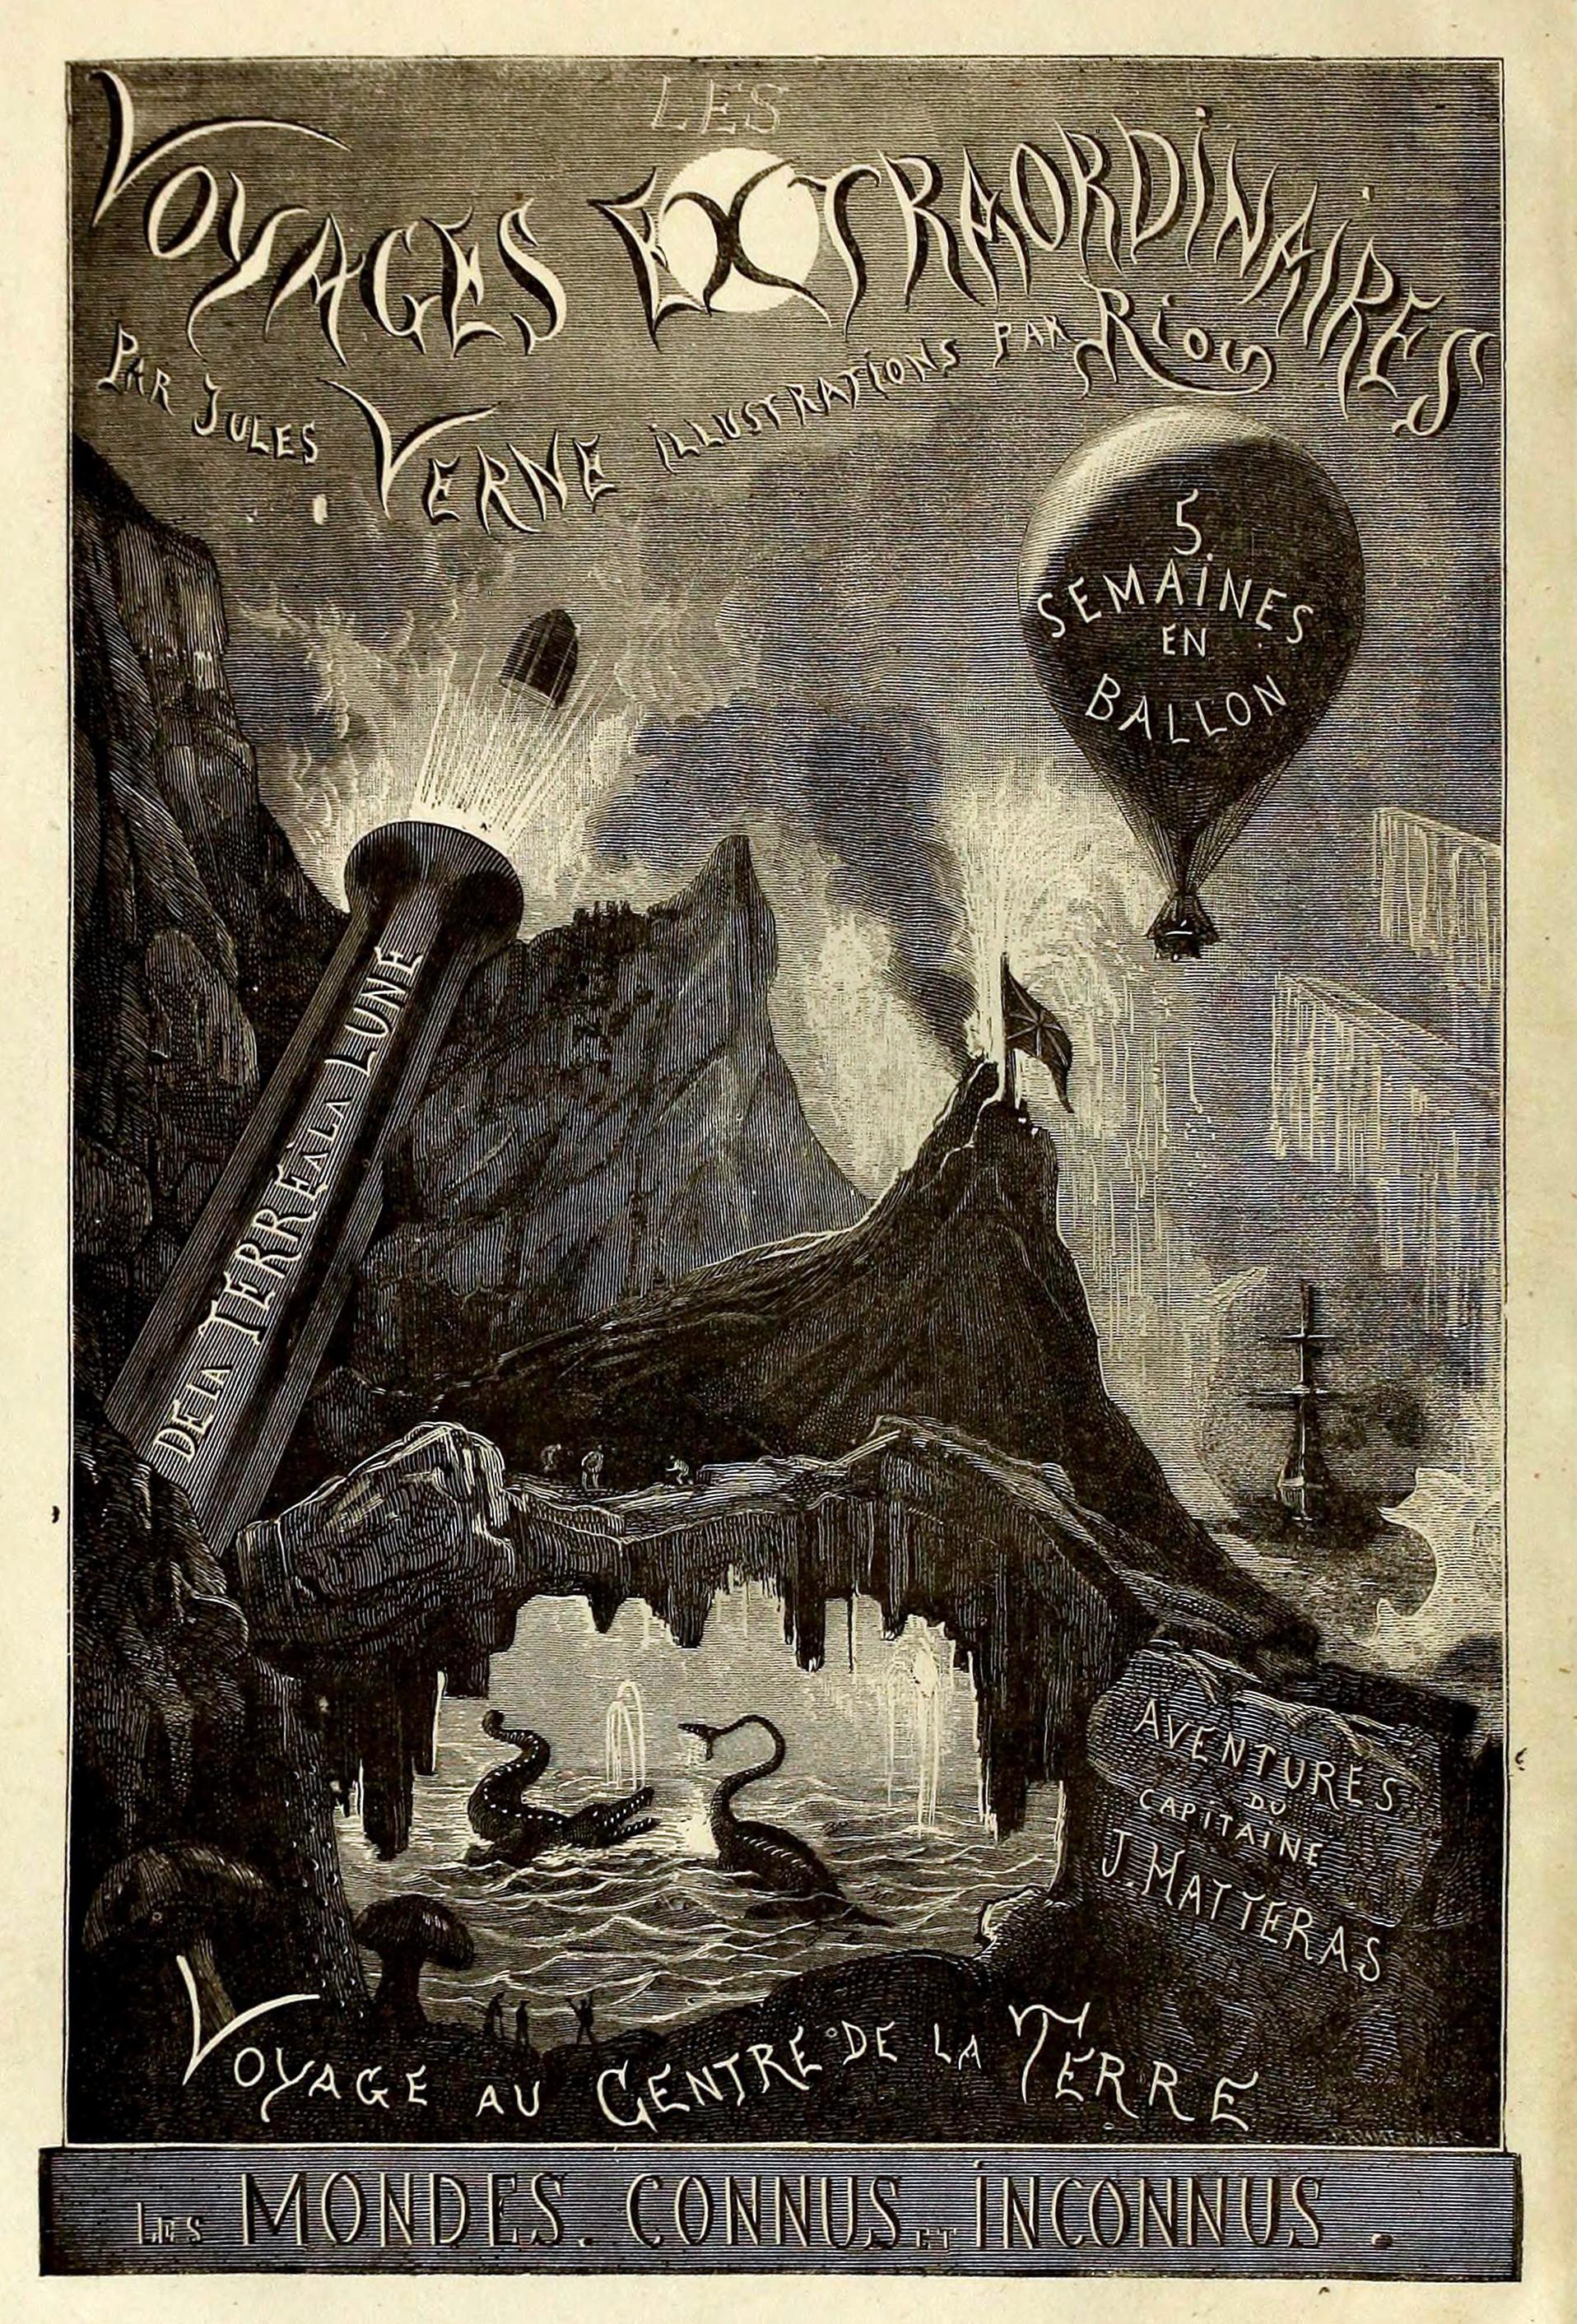 Couverture des Voyages Extraordinaires, de Jules Verne